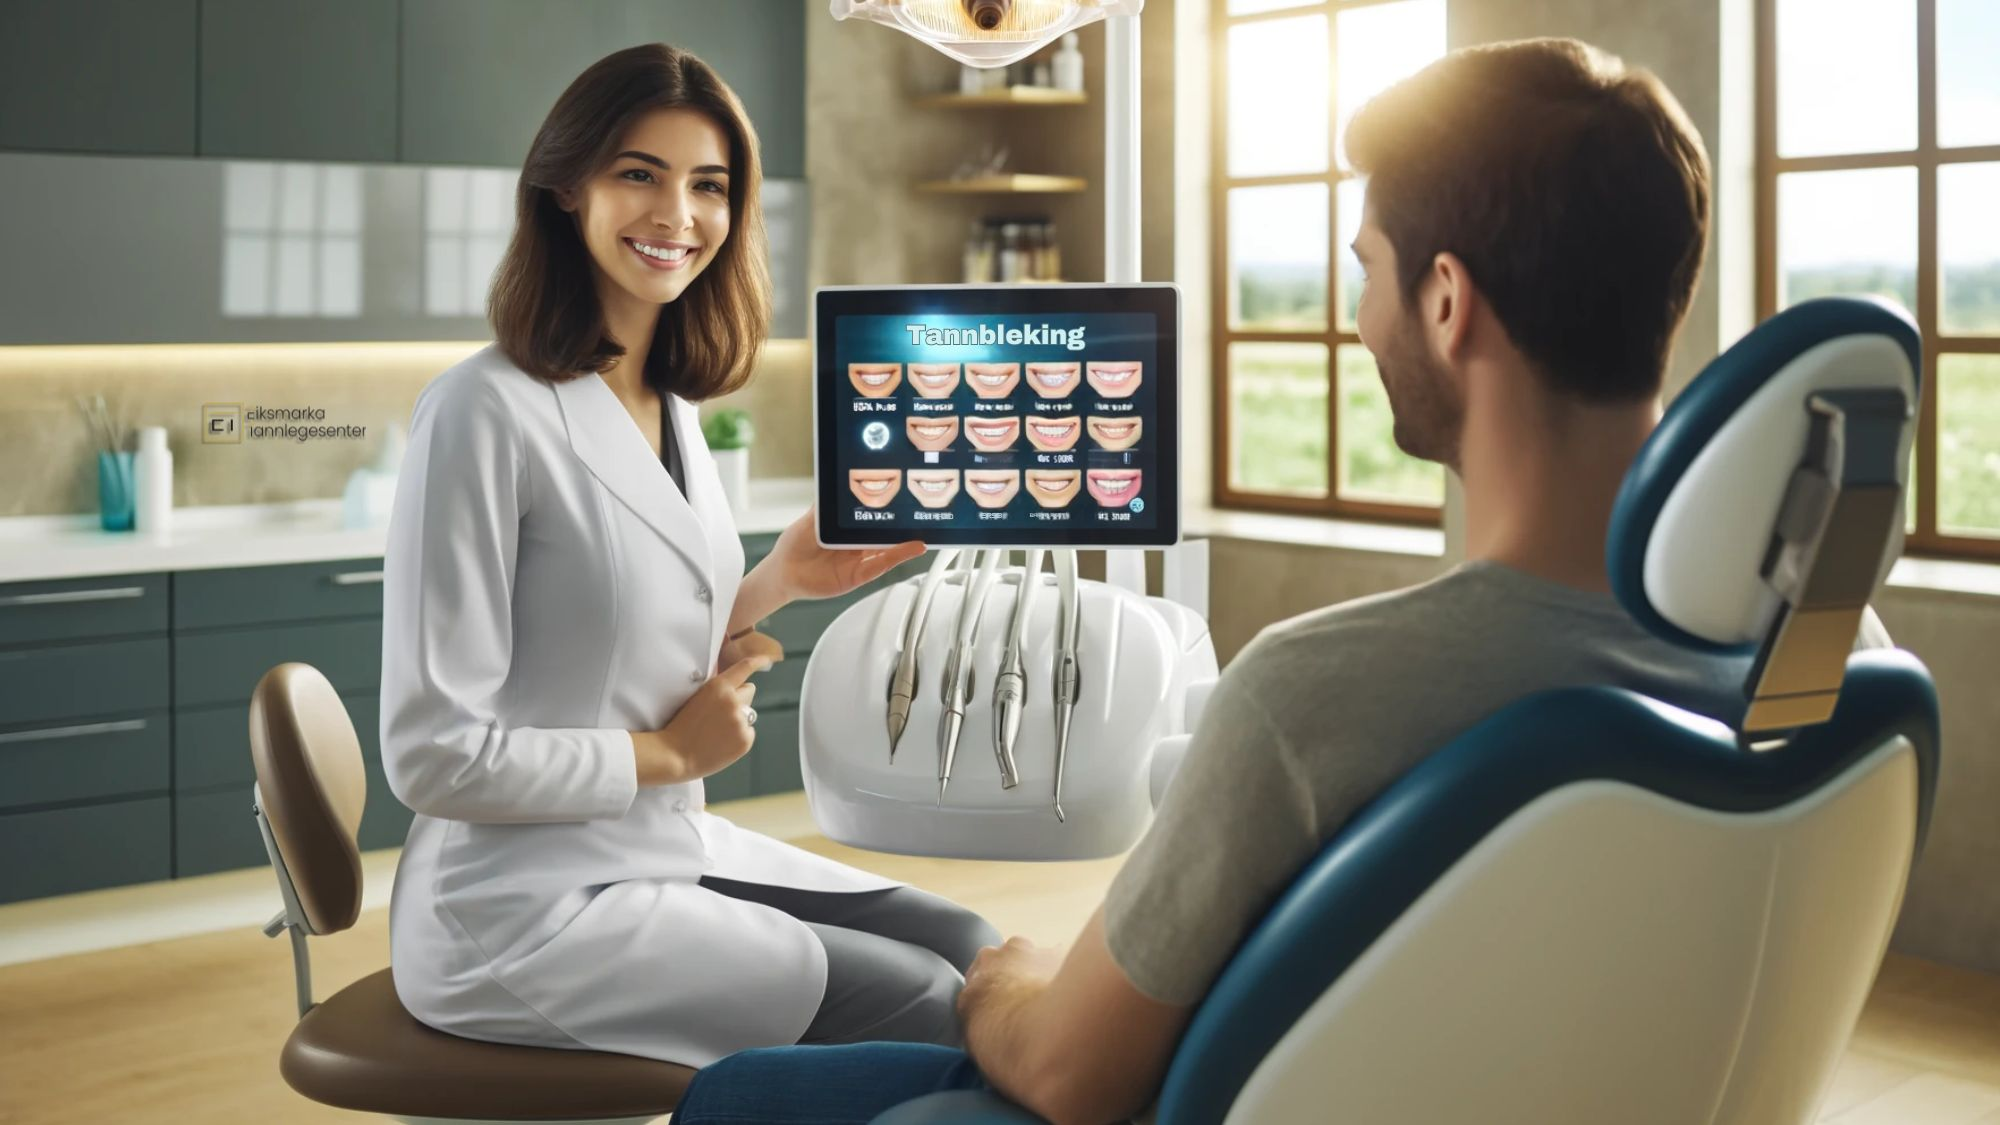 Moderne tannklinikk med tannlege som viser tannblekingsalternativer til smilende pasient.